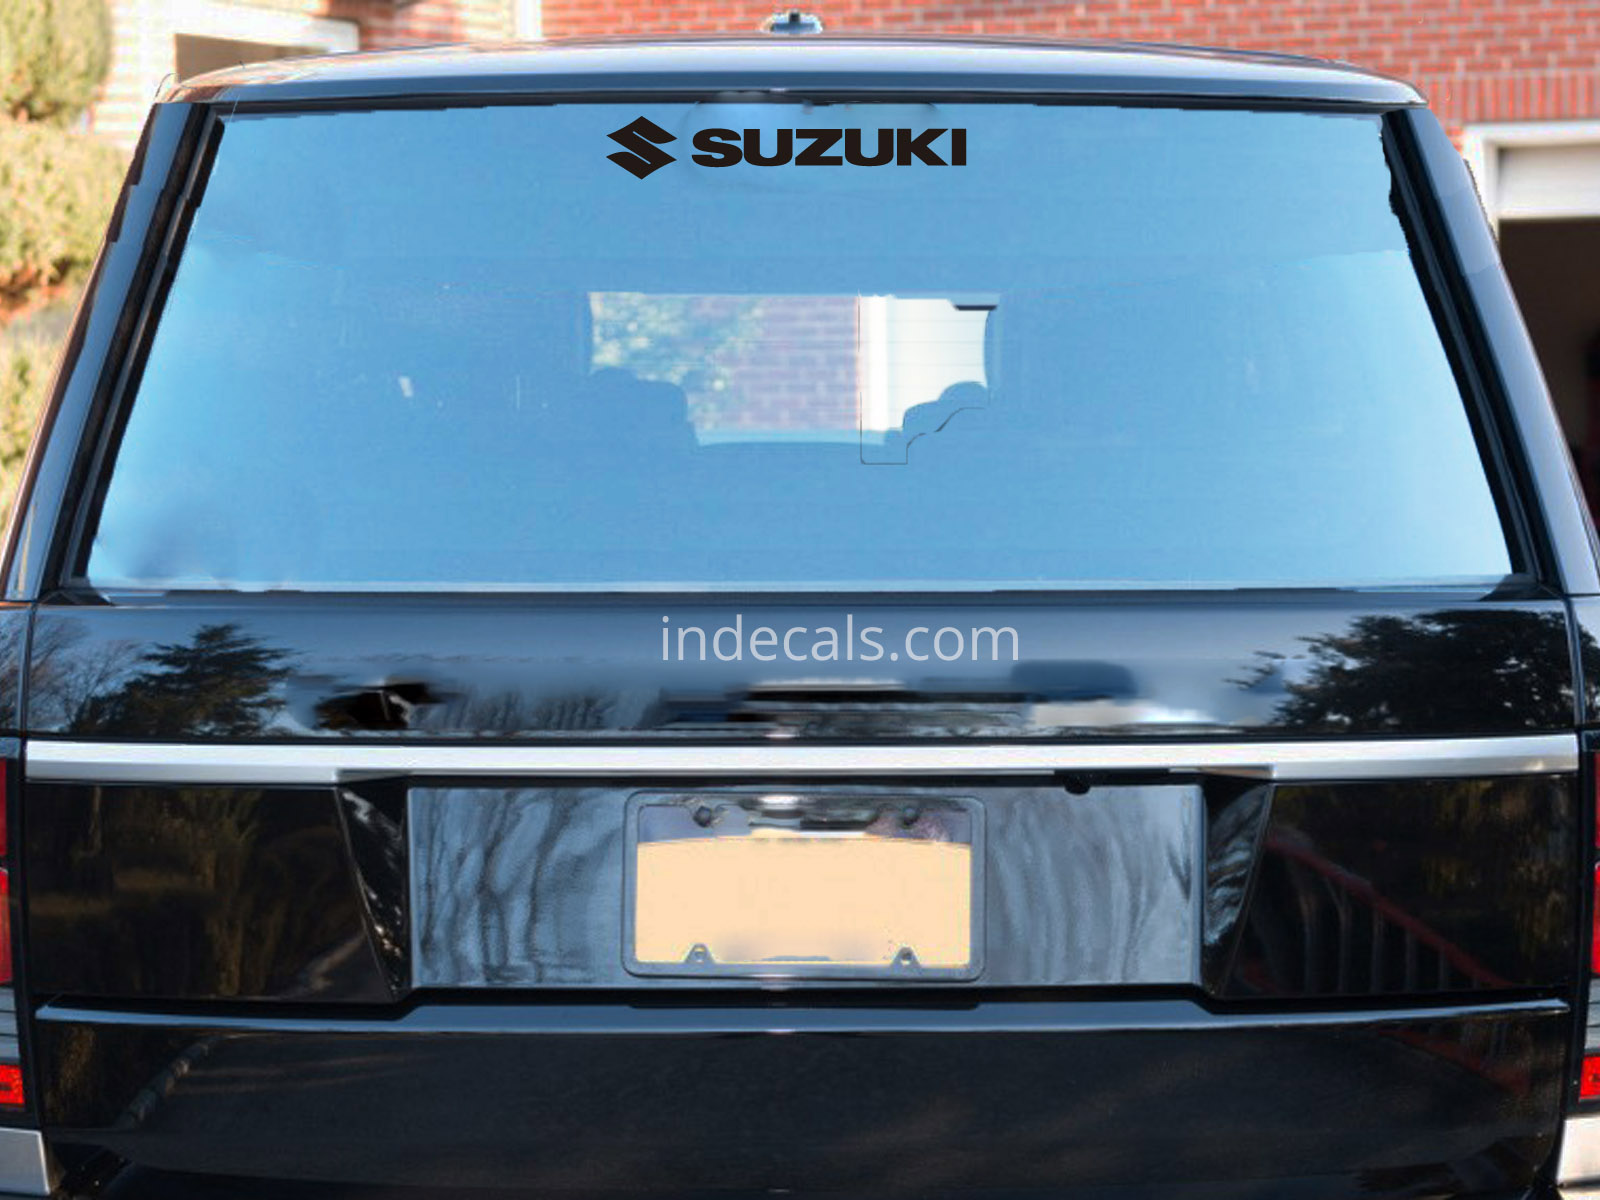 1 x Suzuki Sticker for Windshield or Back Window - Black